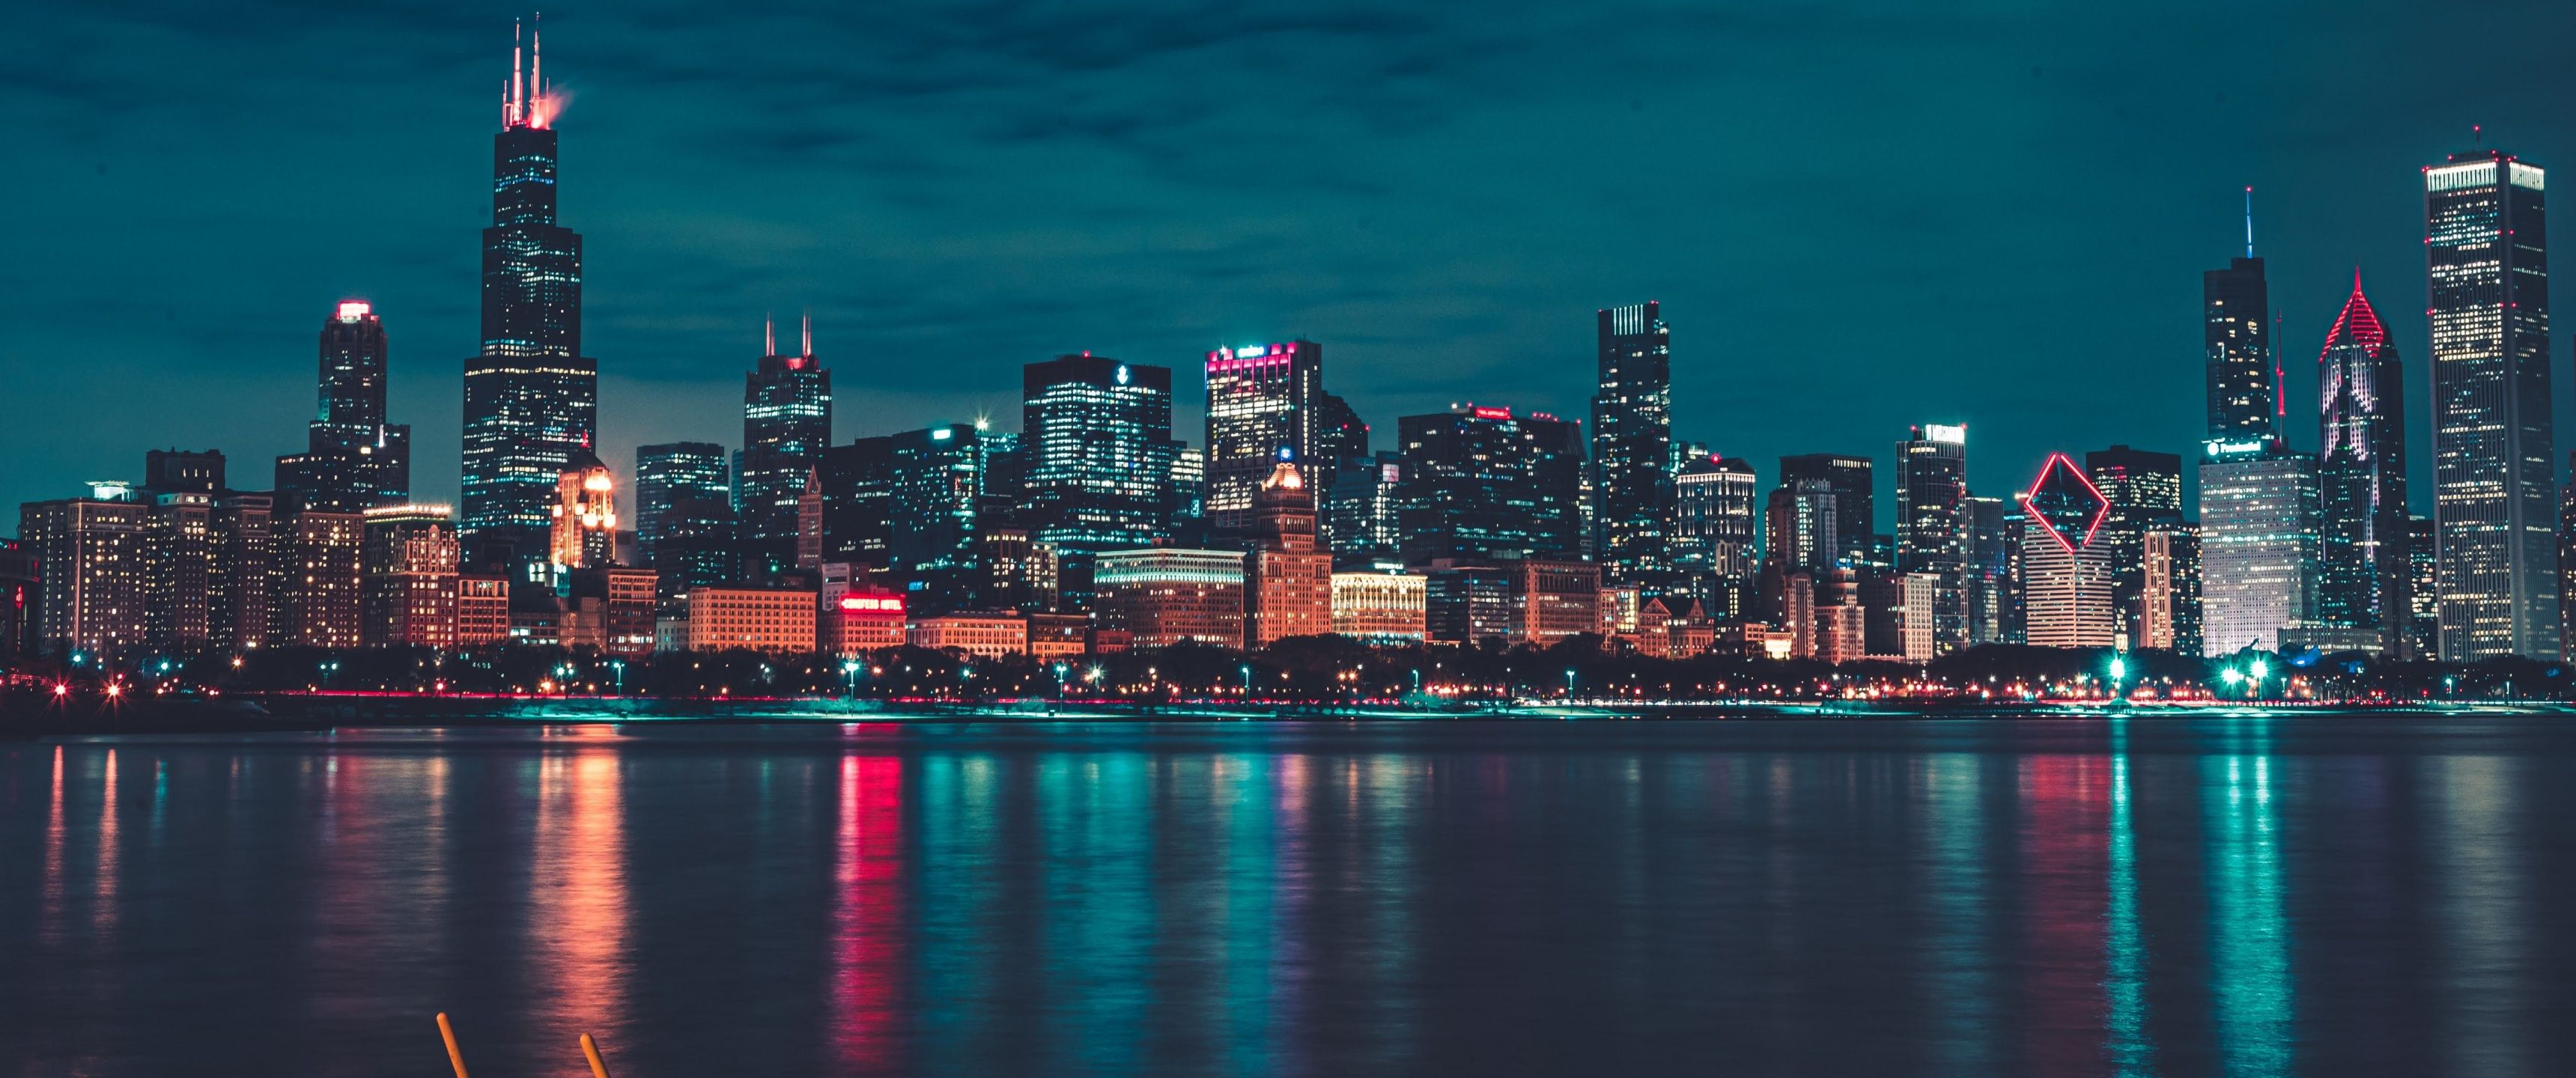 Chicago Wallpaper 4K, Night, City lights, World